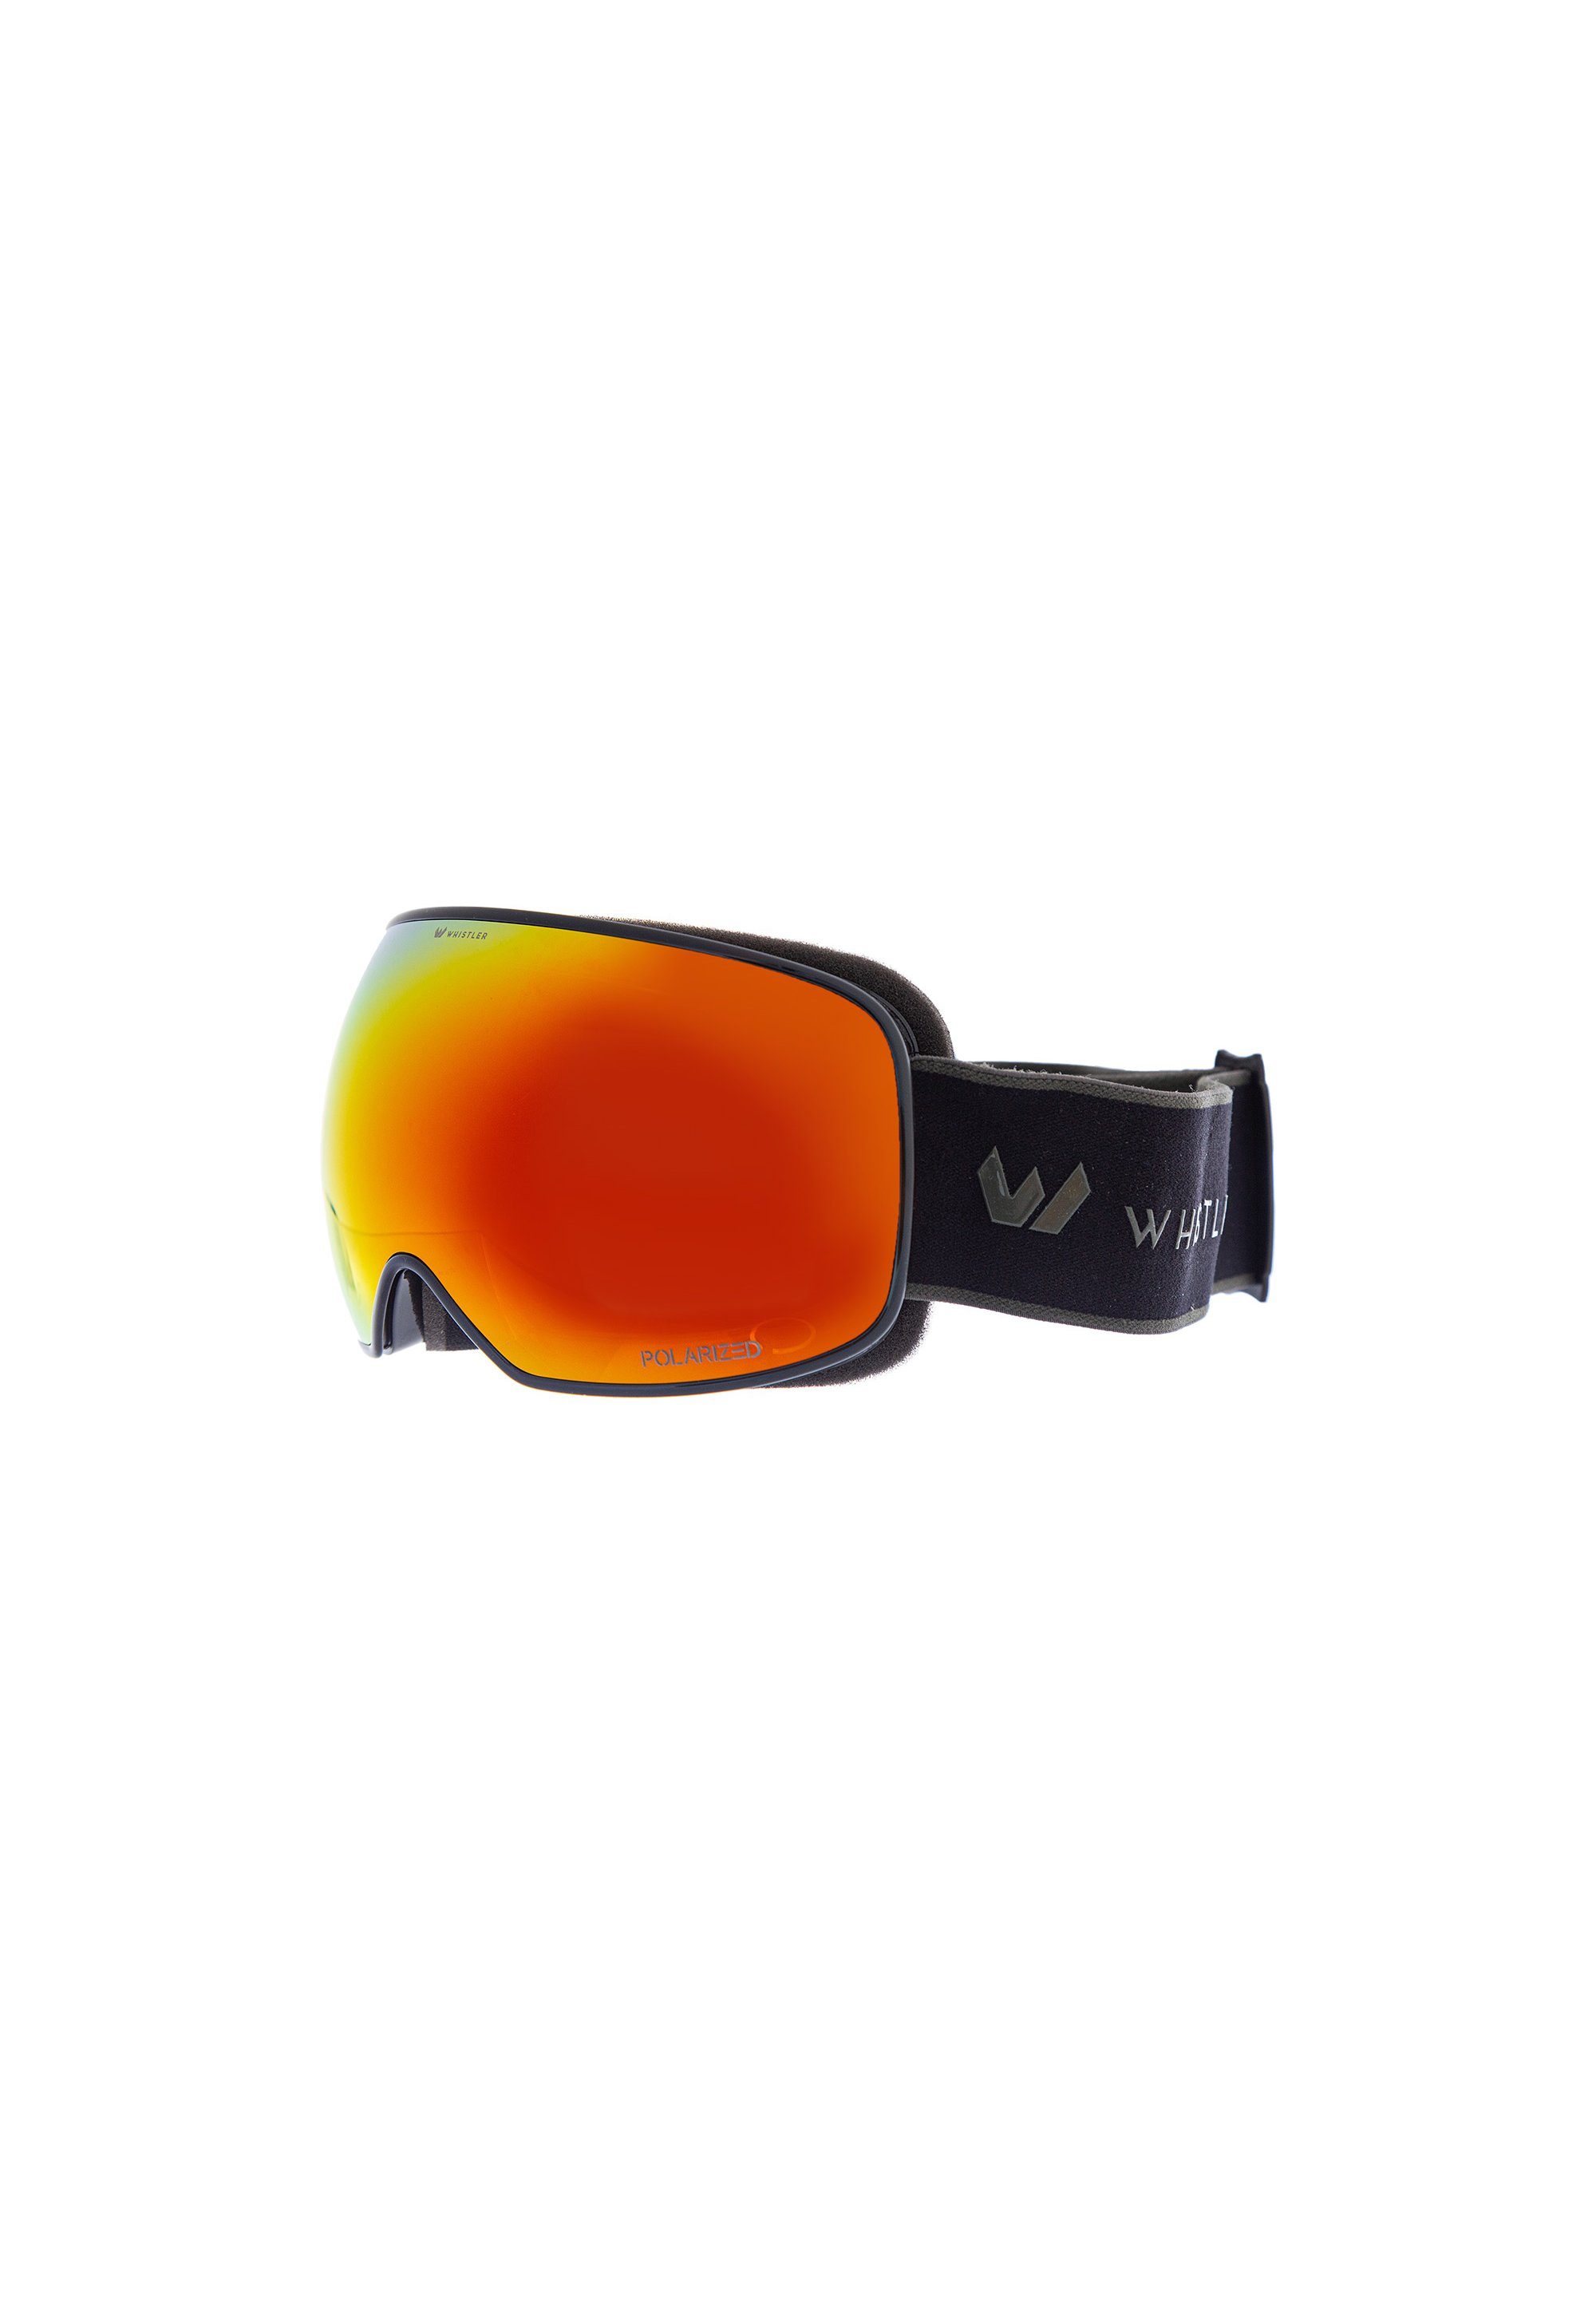 WHISTLER WS9000, Gläsern Skibrille mit austauschbaren